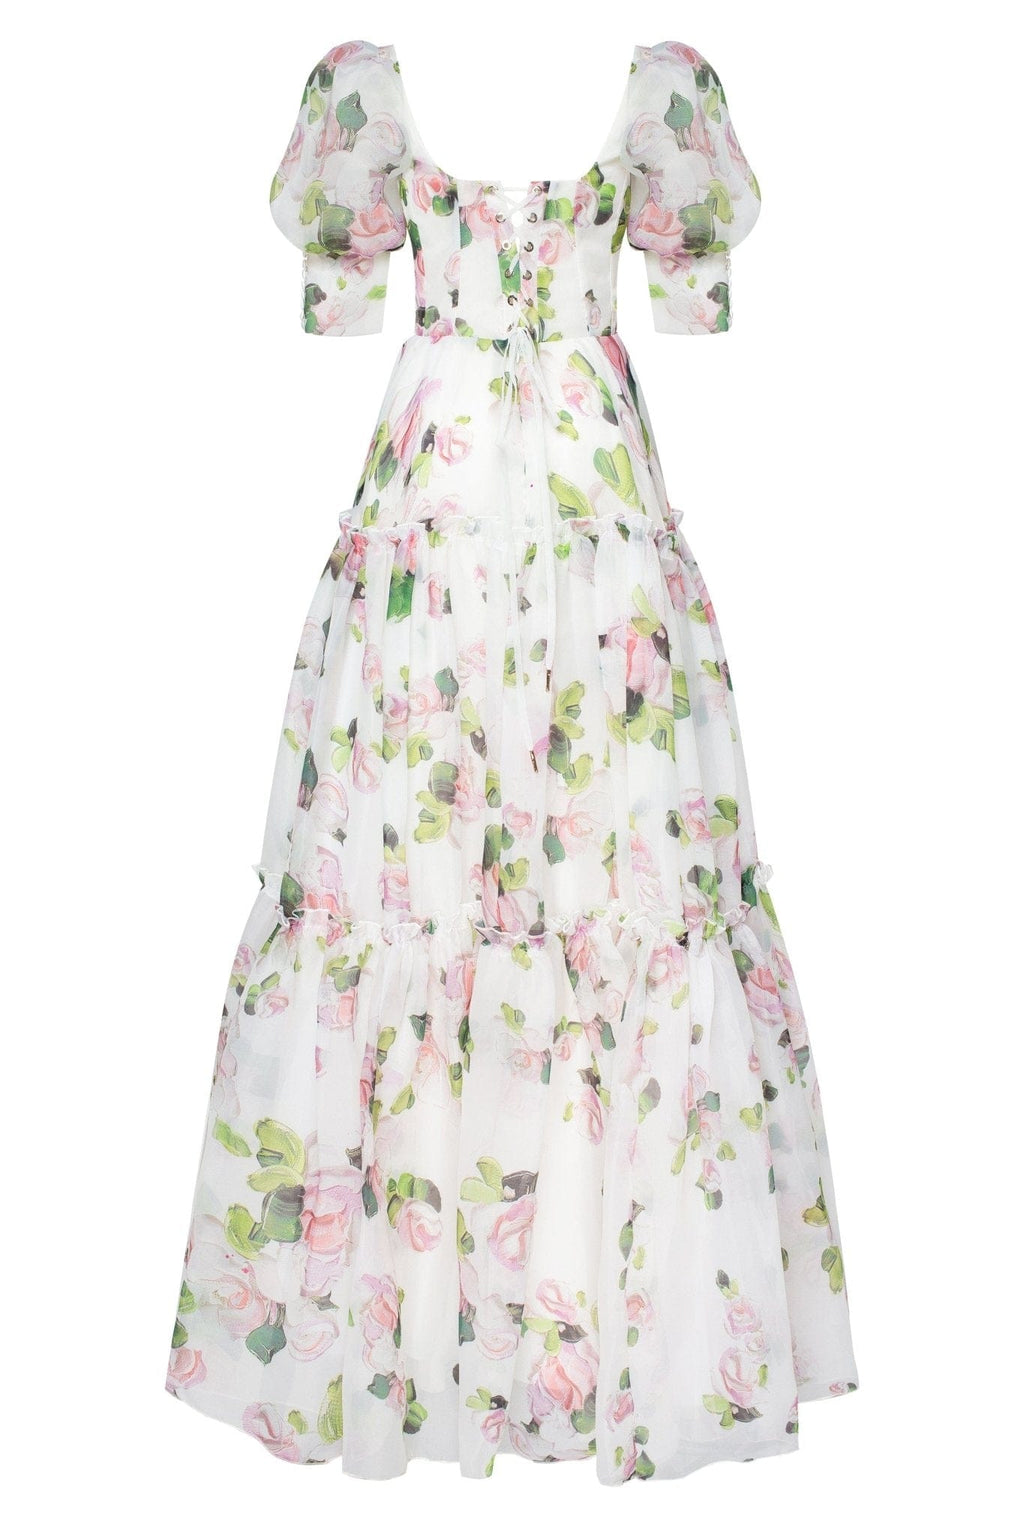 Apple Blossom Feminine voluminous sheer sleeves dress - Milla